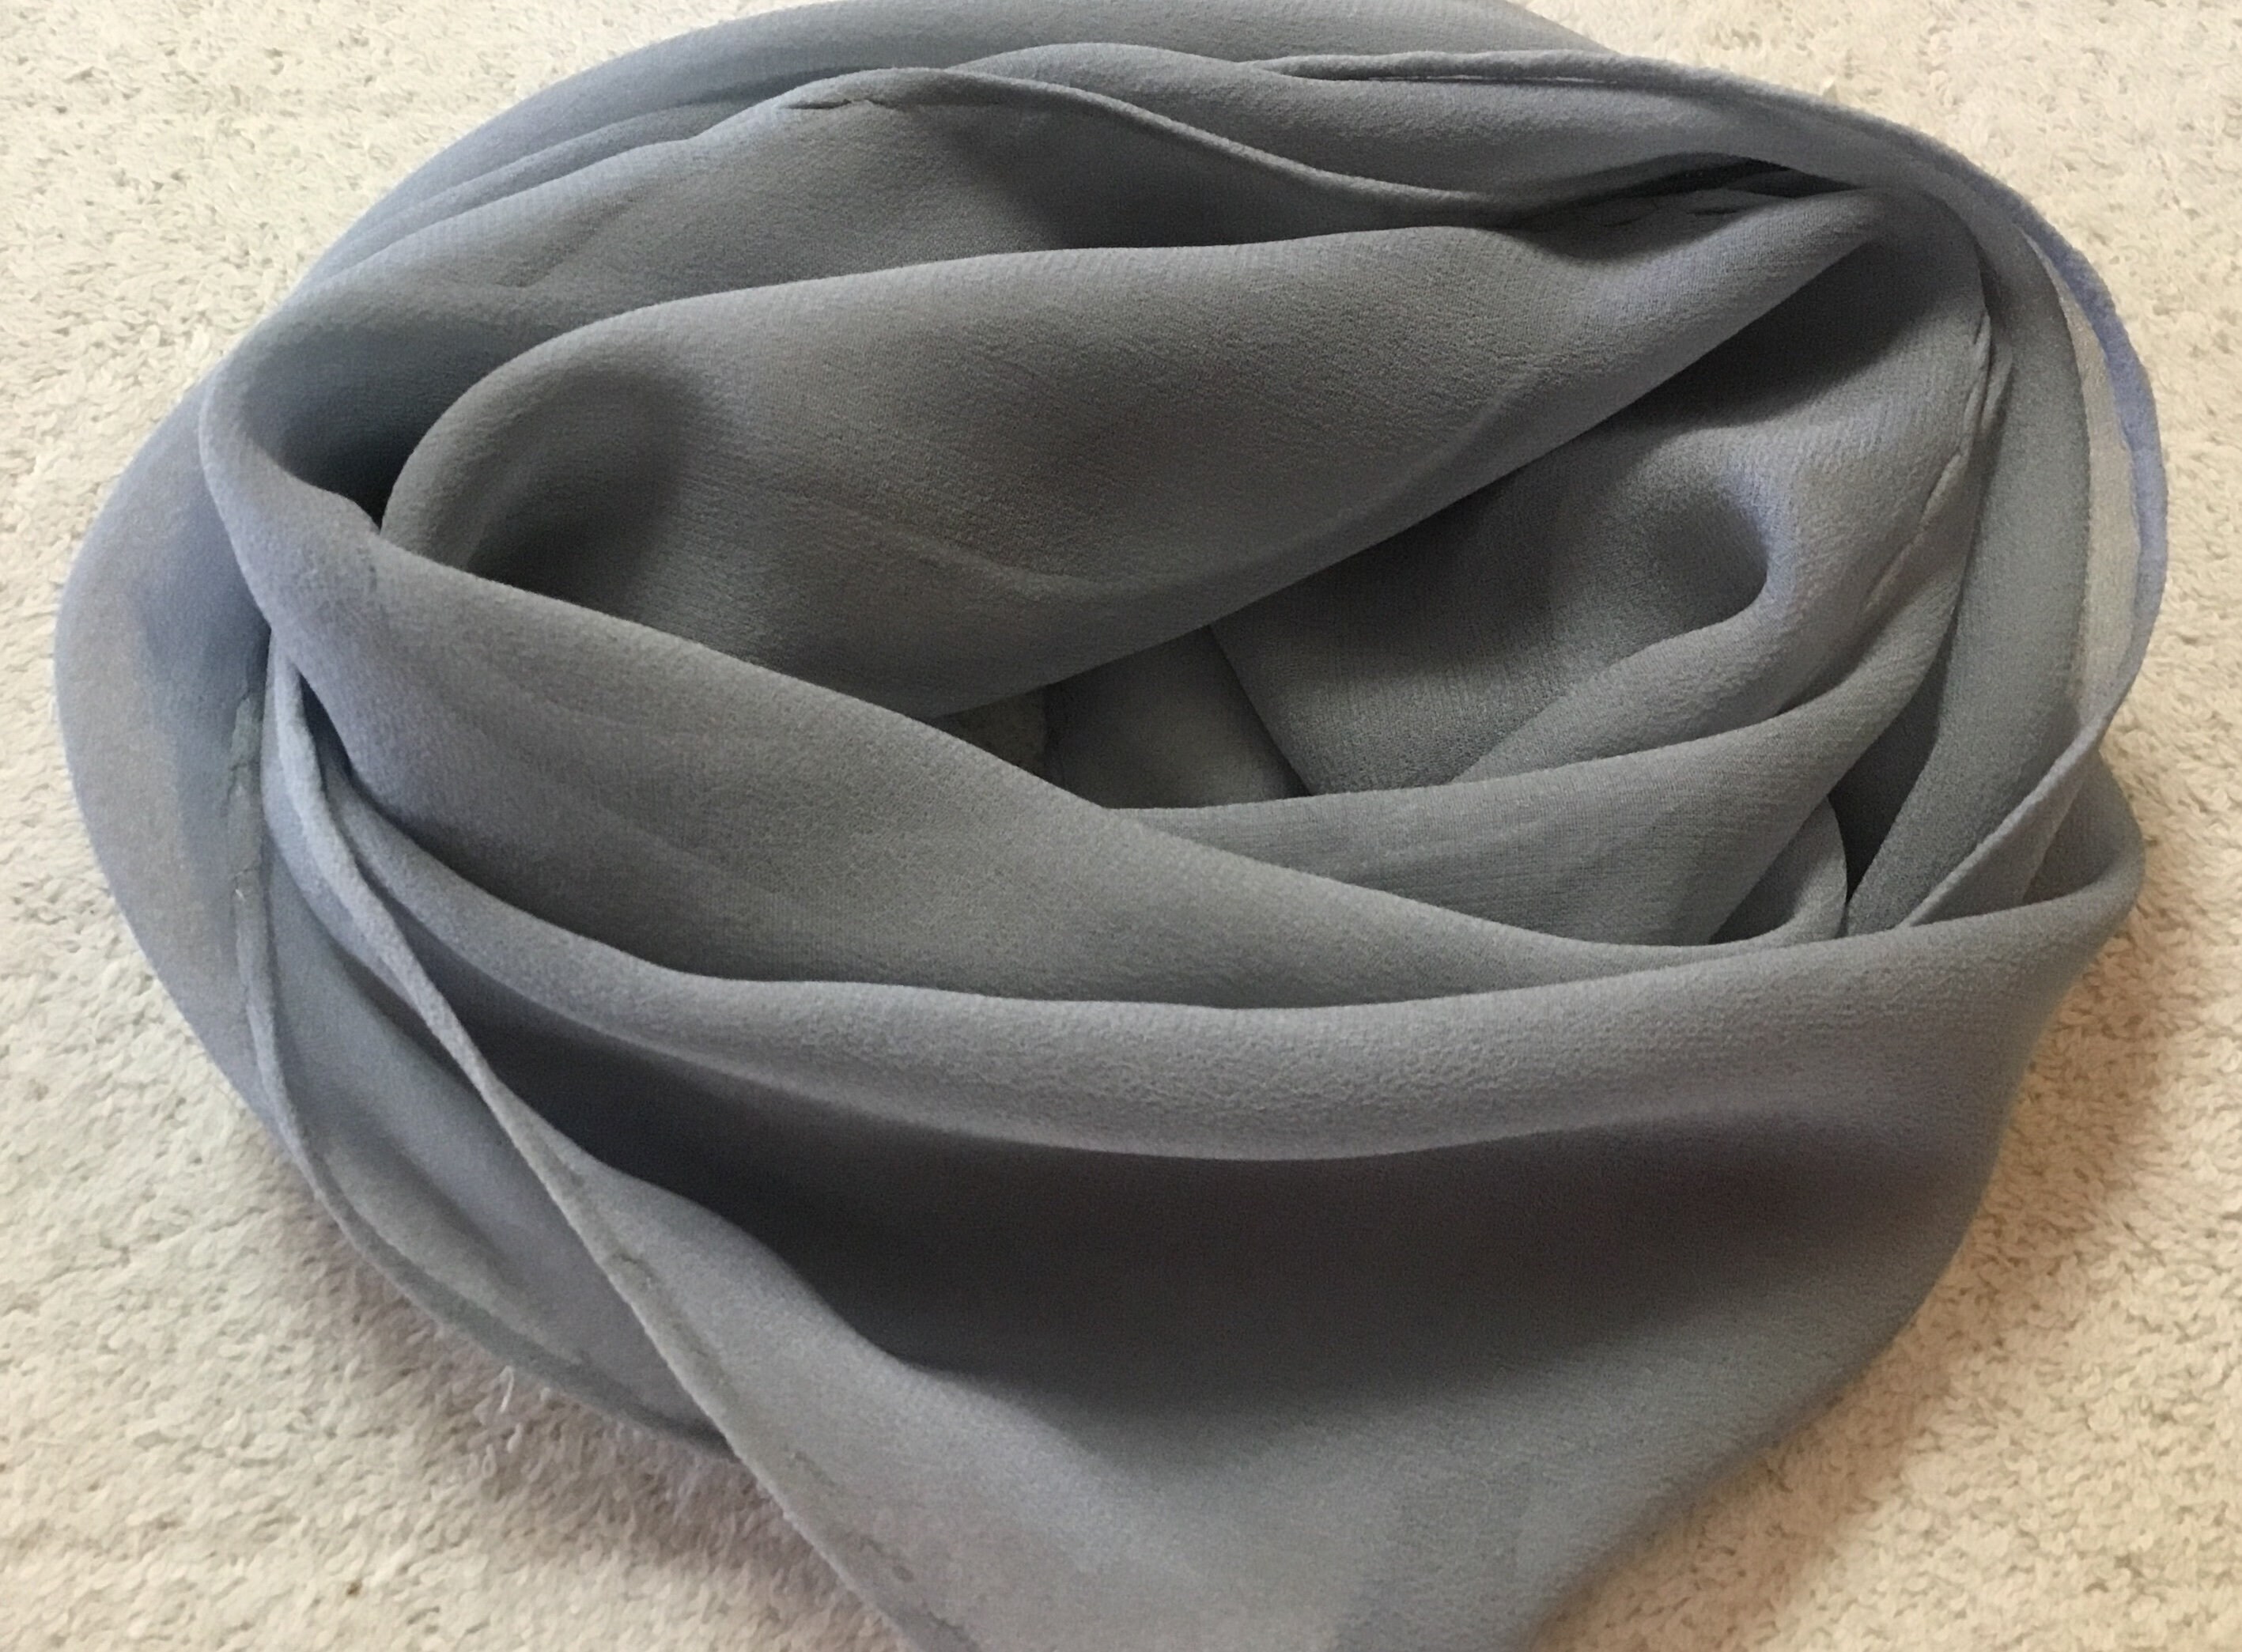 Grey Silk Scarf Silver Scarf Raw Silk Scarves Elegant Gray 